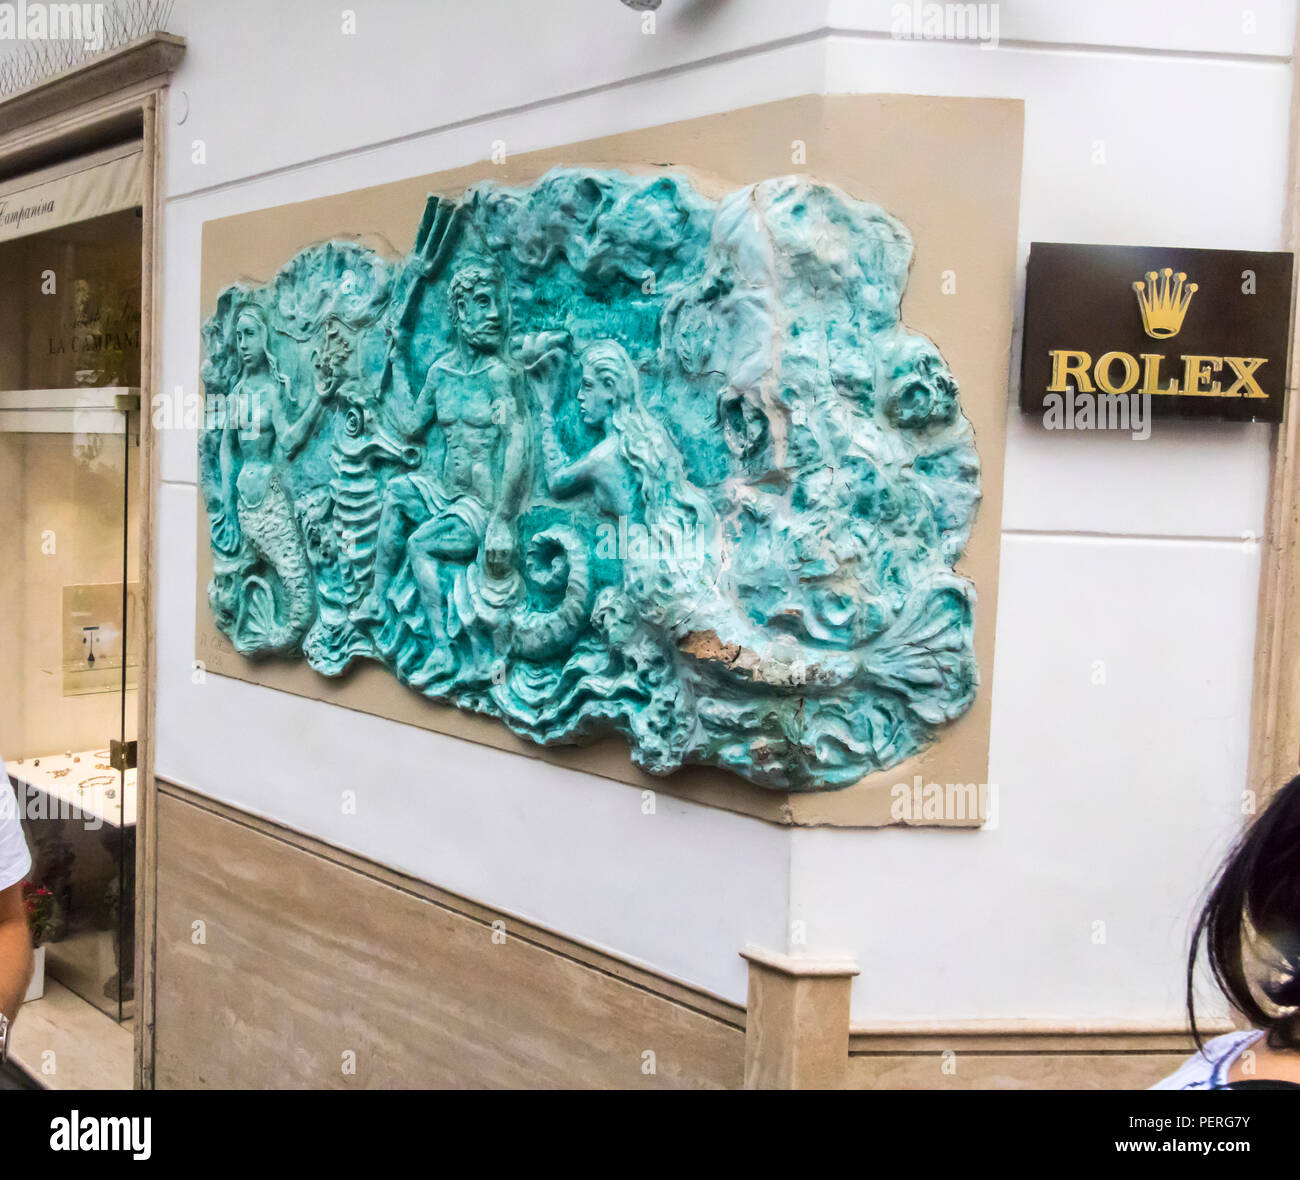 Rolex orologiaio di lusso business capri Italia Europa, ricchi shopmaker, ricco Foto Stock